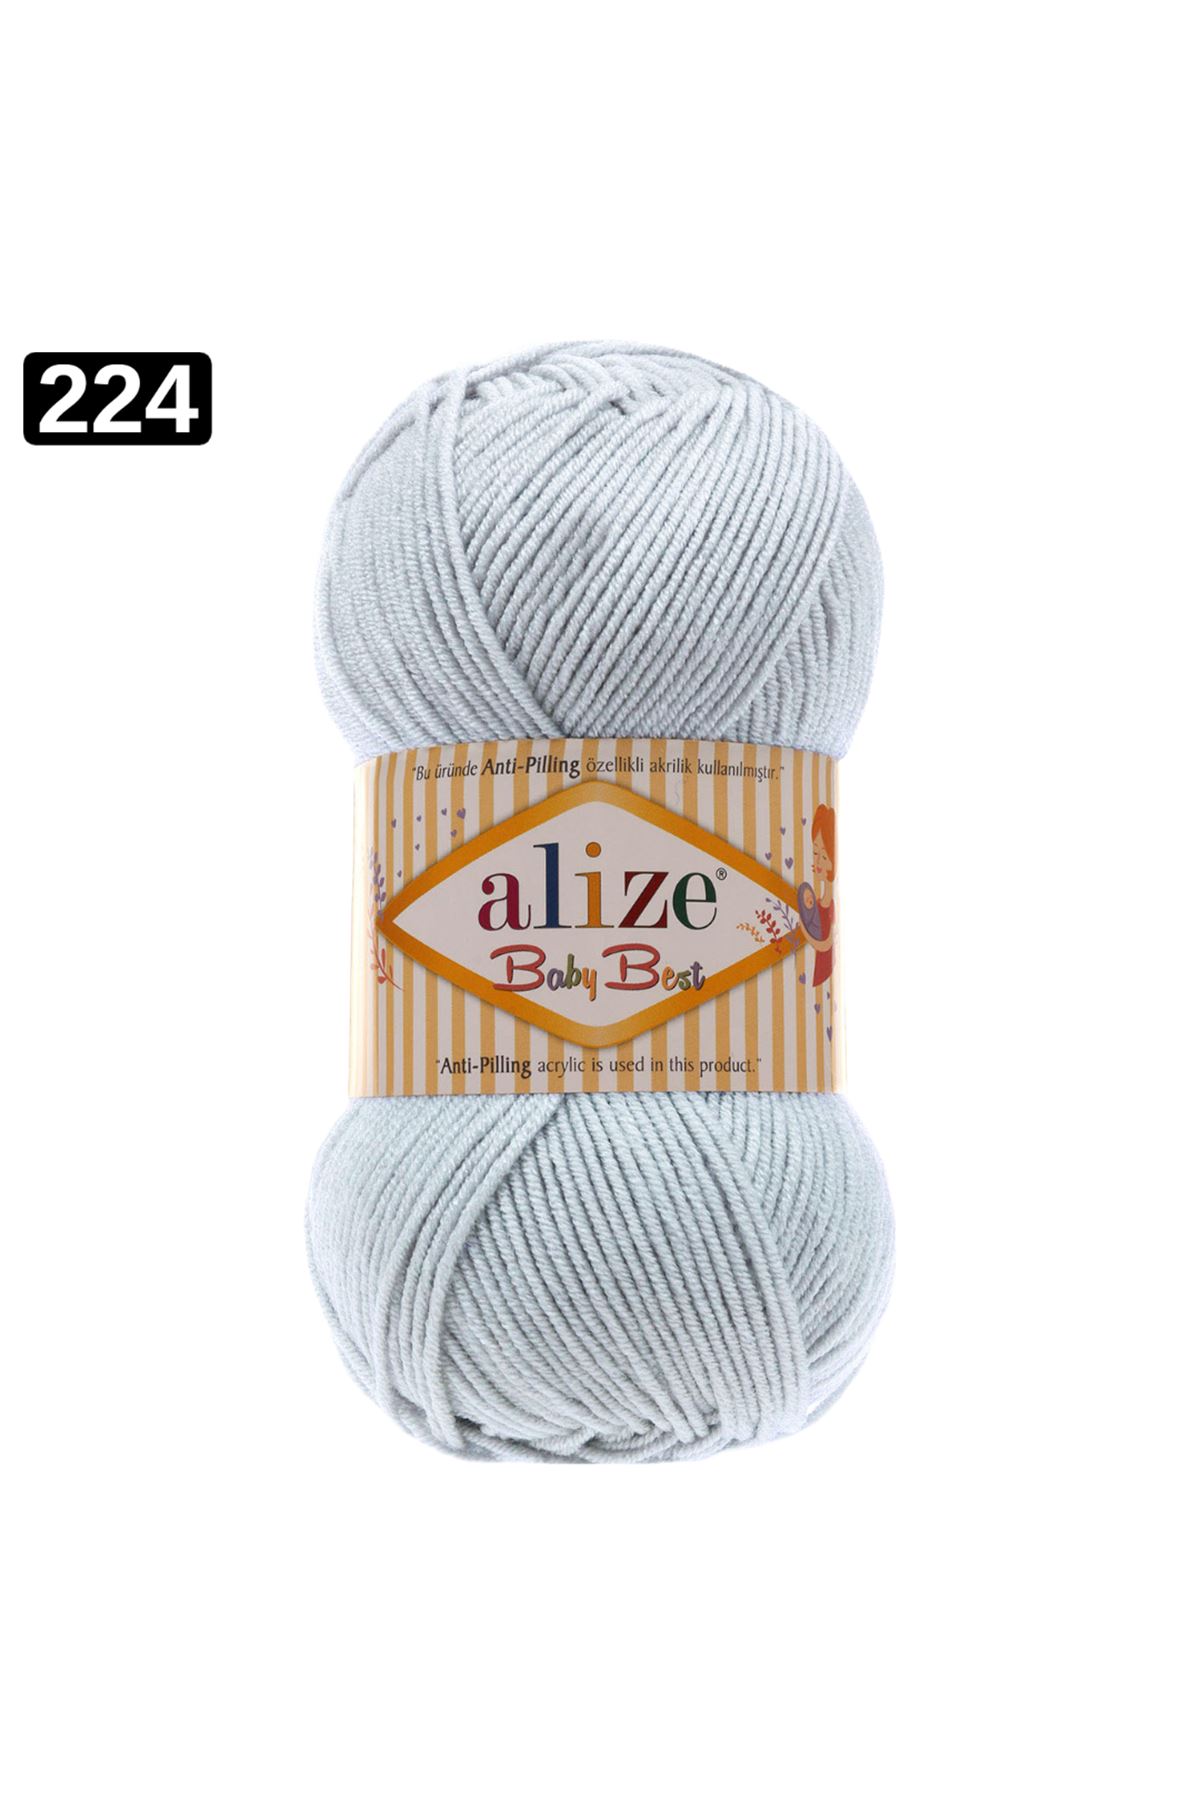 Alize Baby Best Renk No: 224